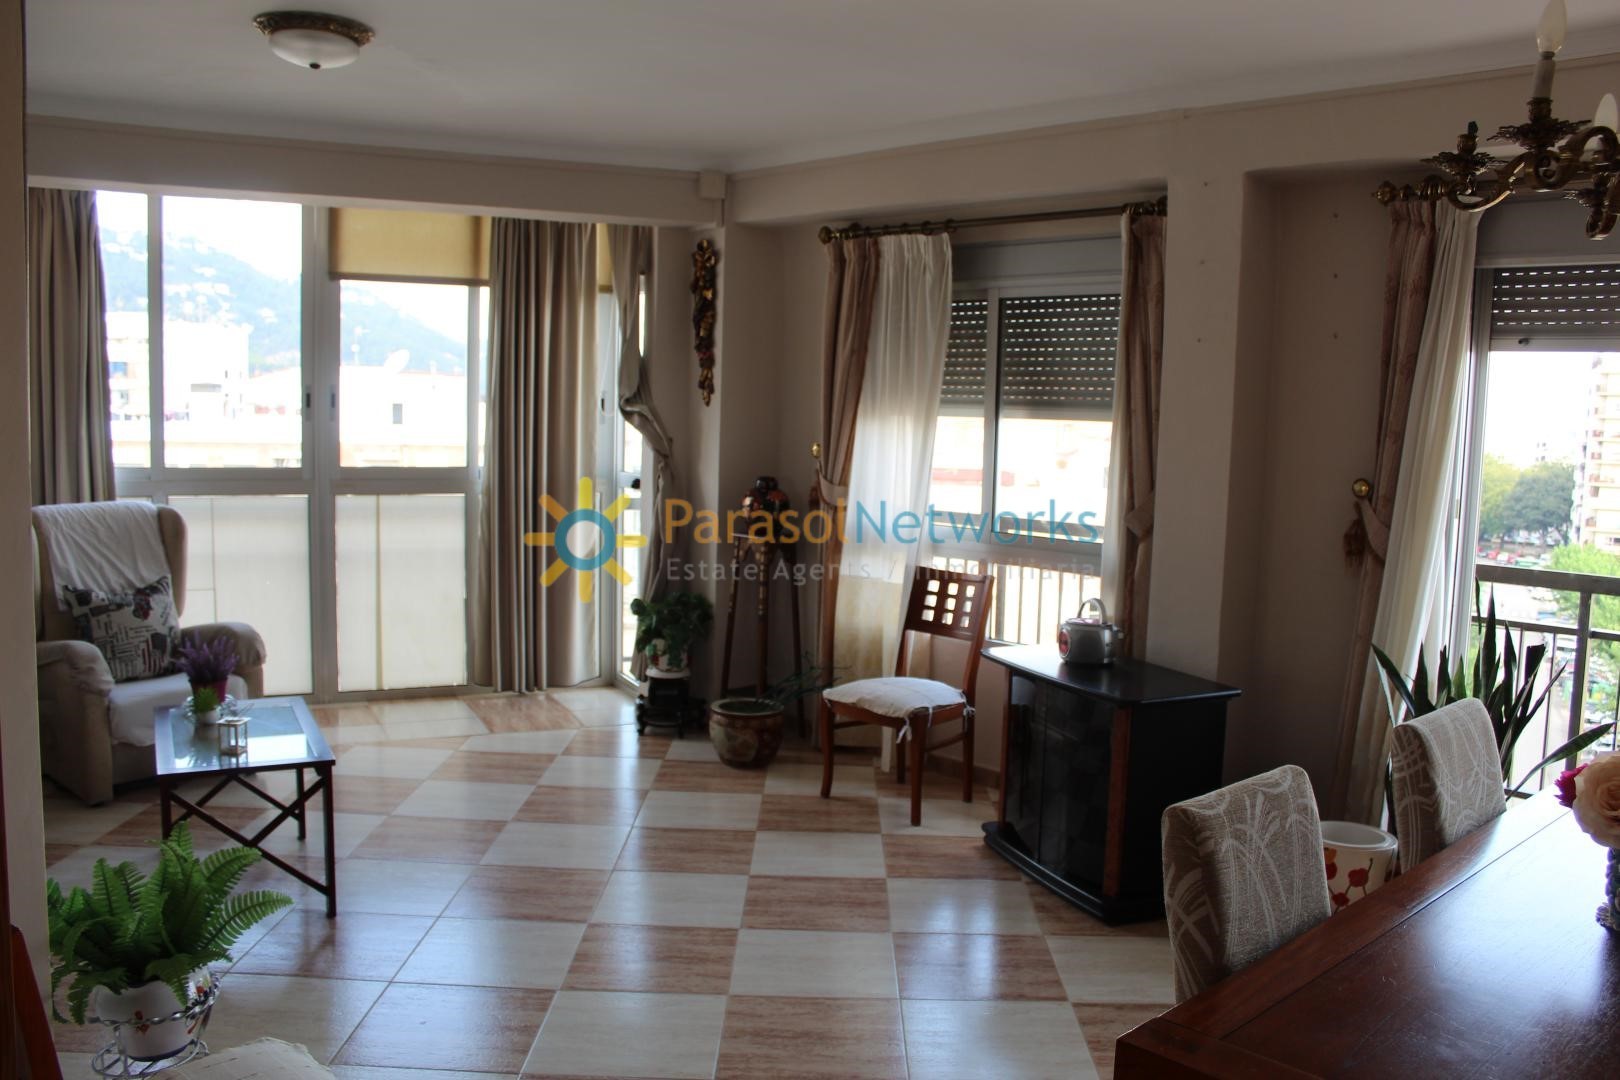 Apartment for rent in Oliva – Ref: 298